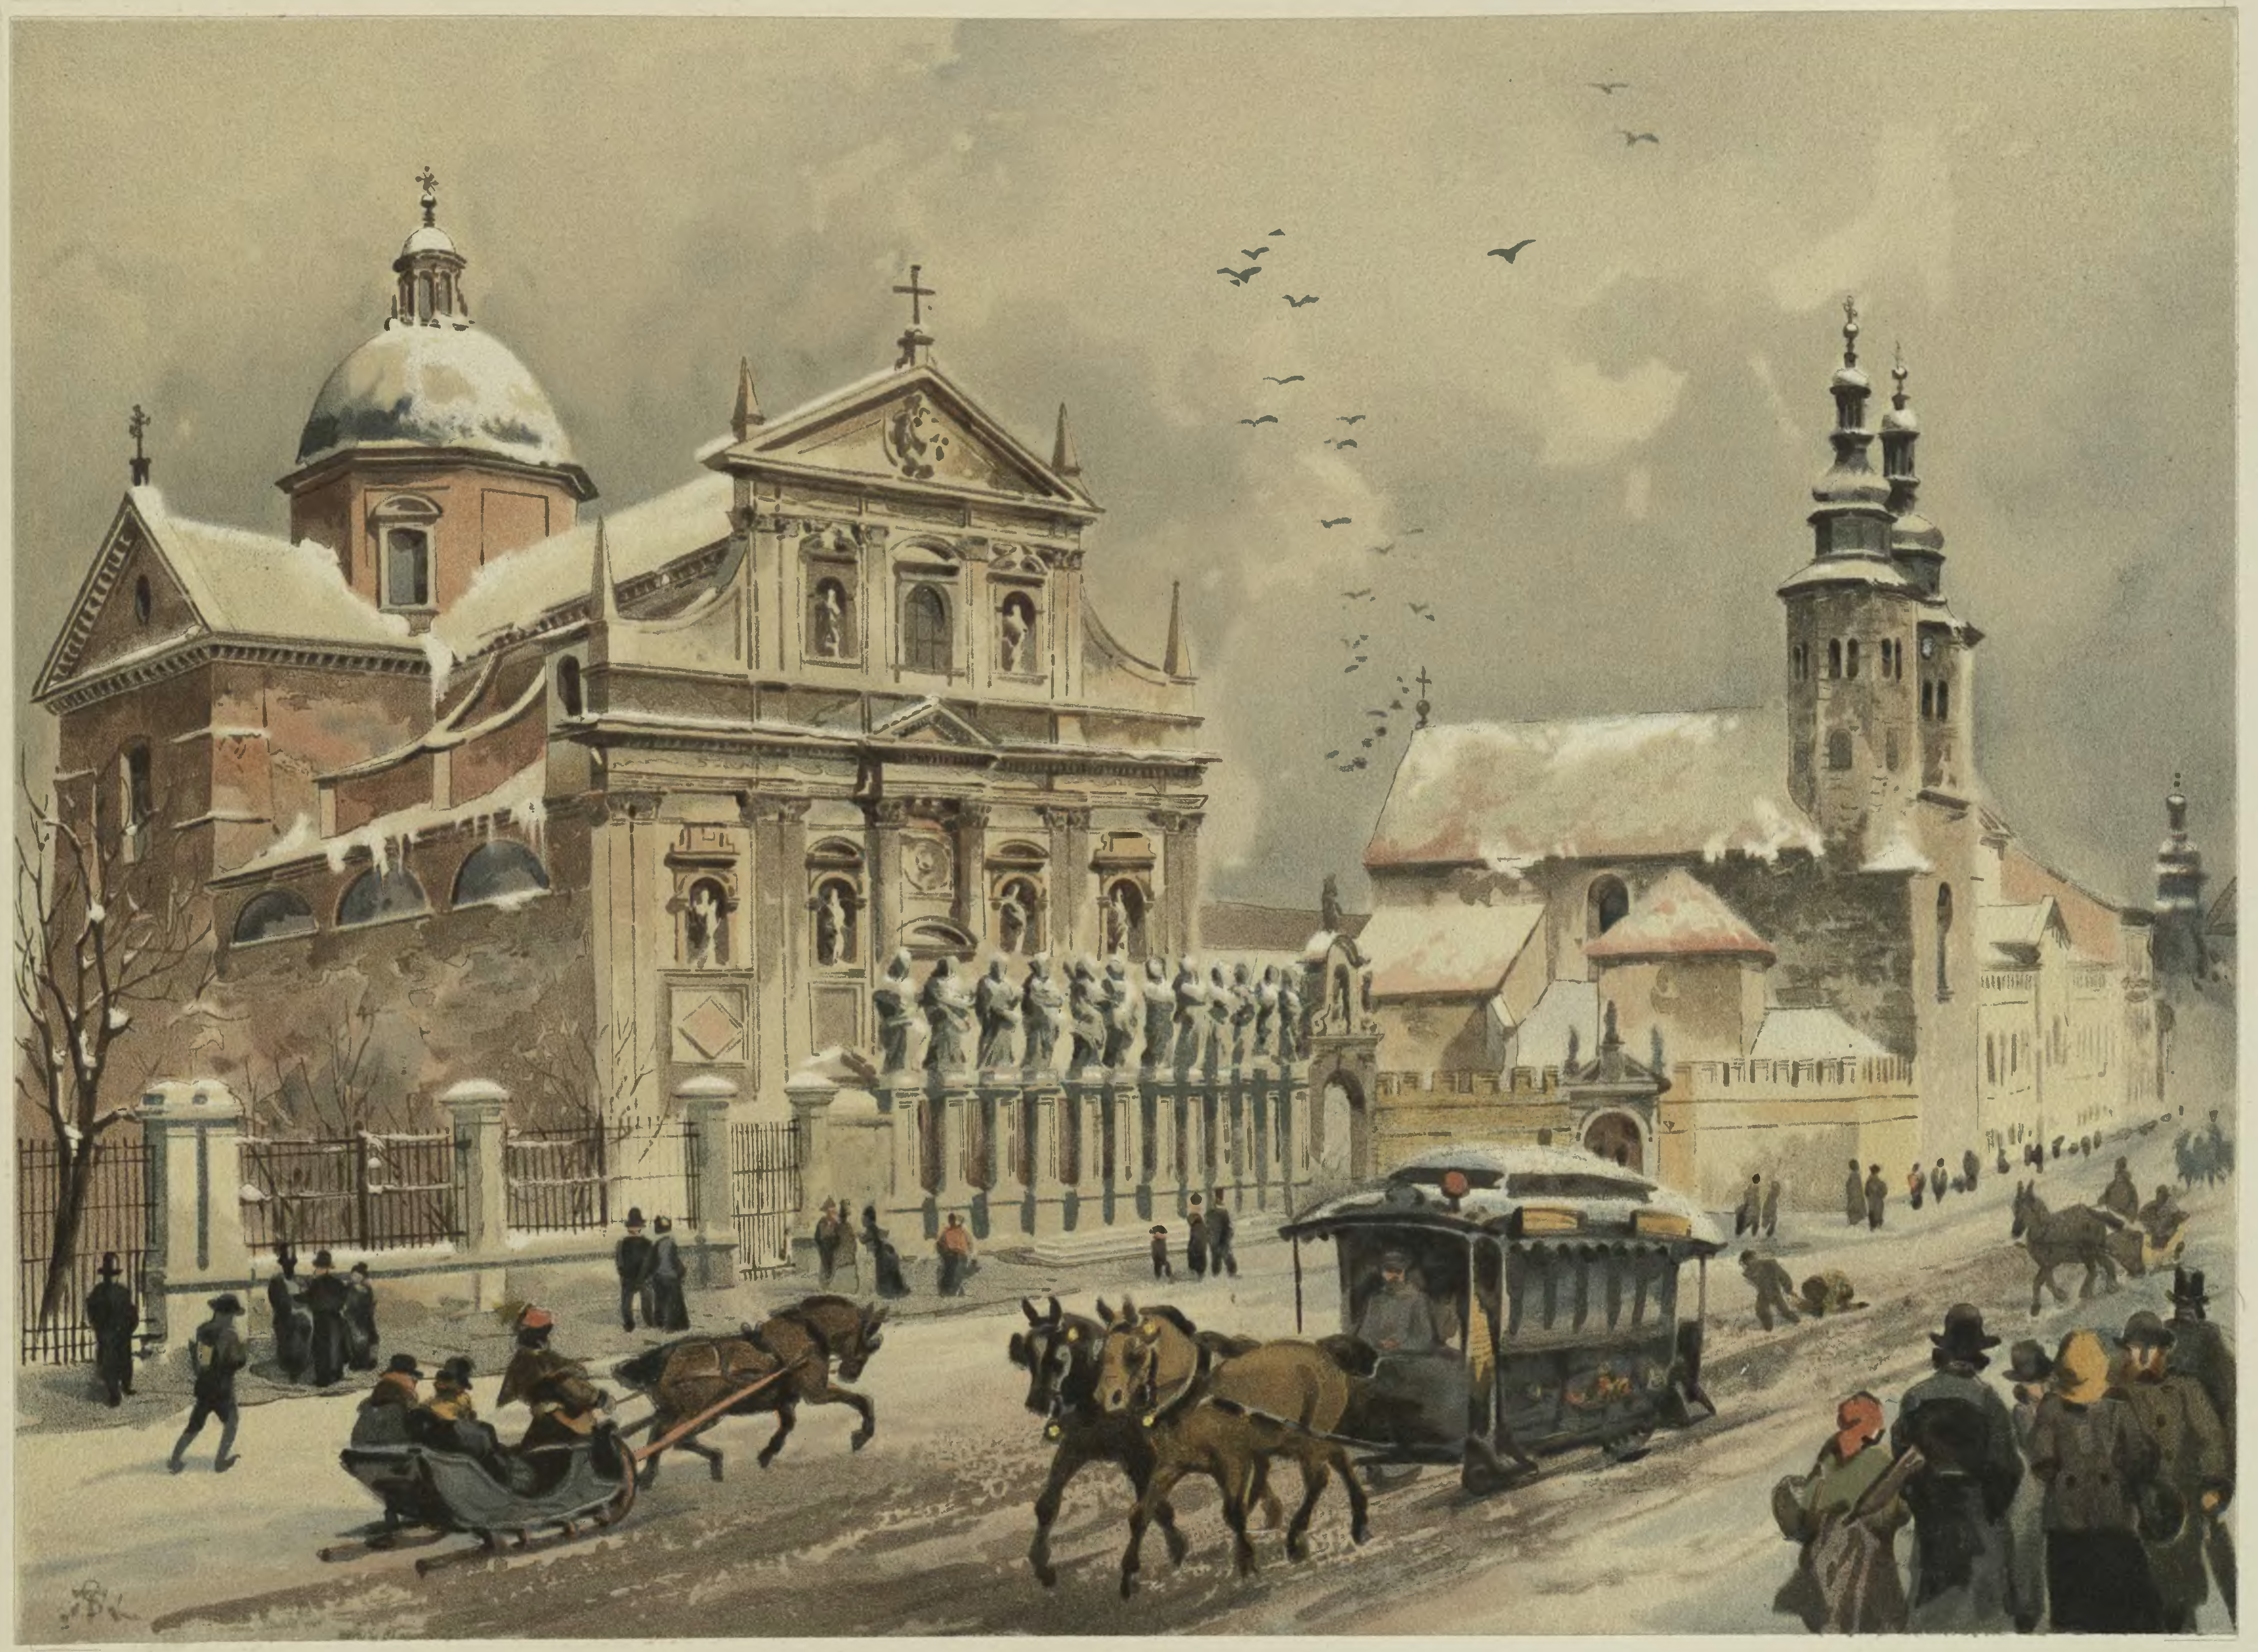 Juliusz Kossak (1824-1899) i Stanisław Tondos (1854-1917) "Kościół śś. Piotra w Pawła", chromolitografia z 1886 roku